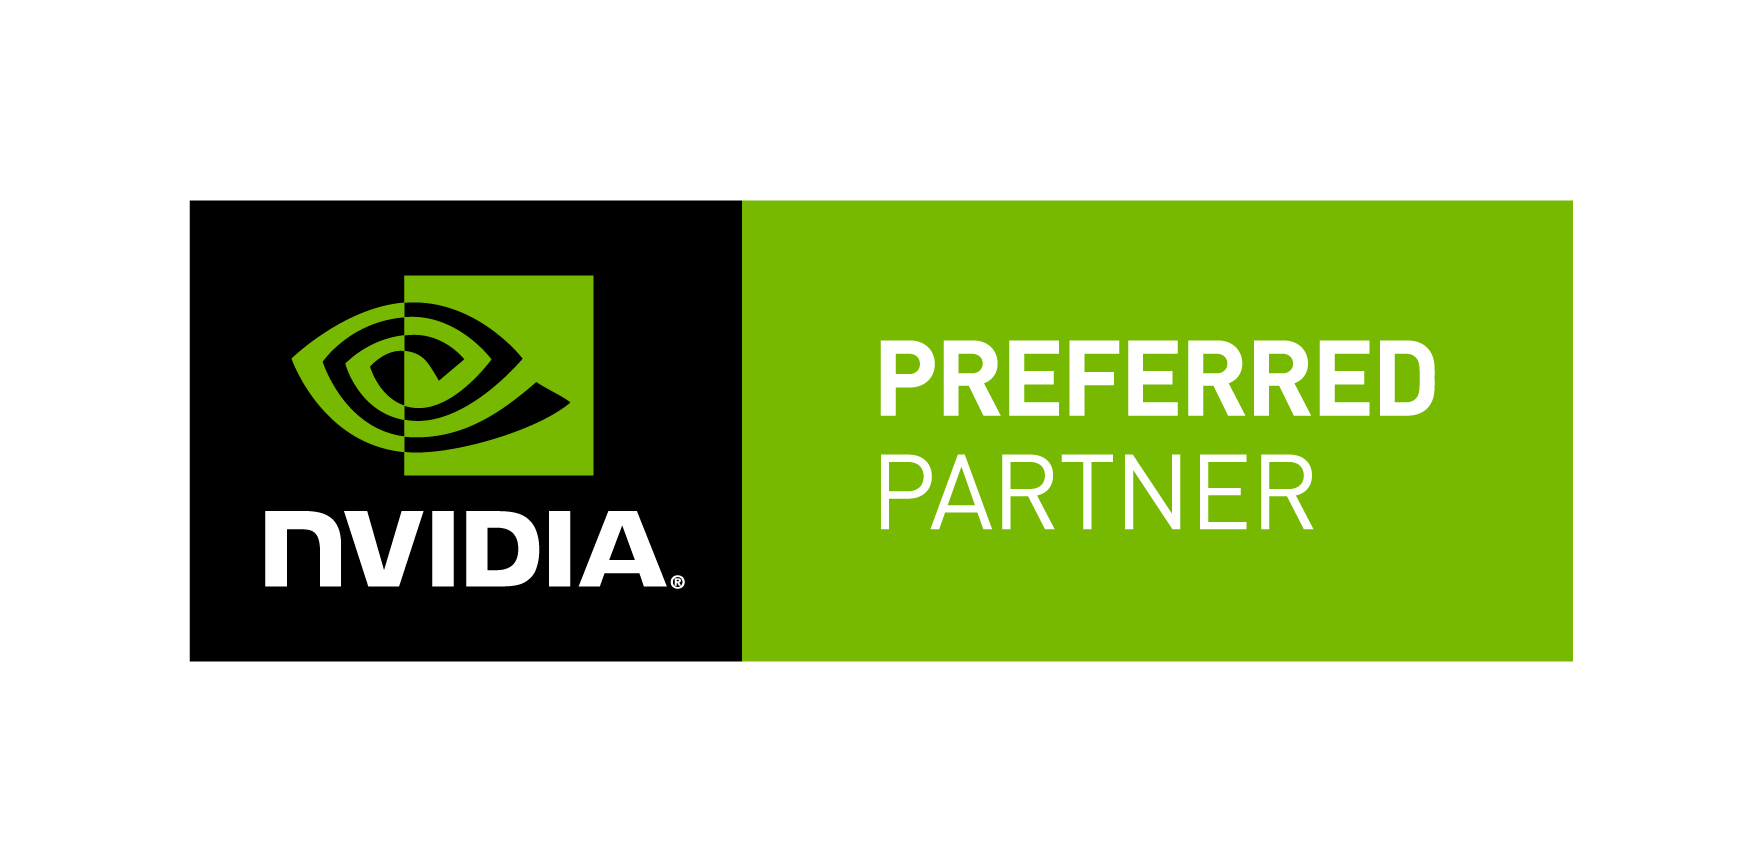 Preferred Partner of NVIDIA